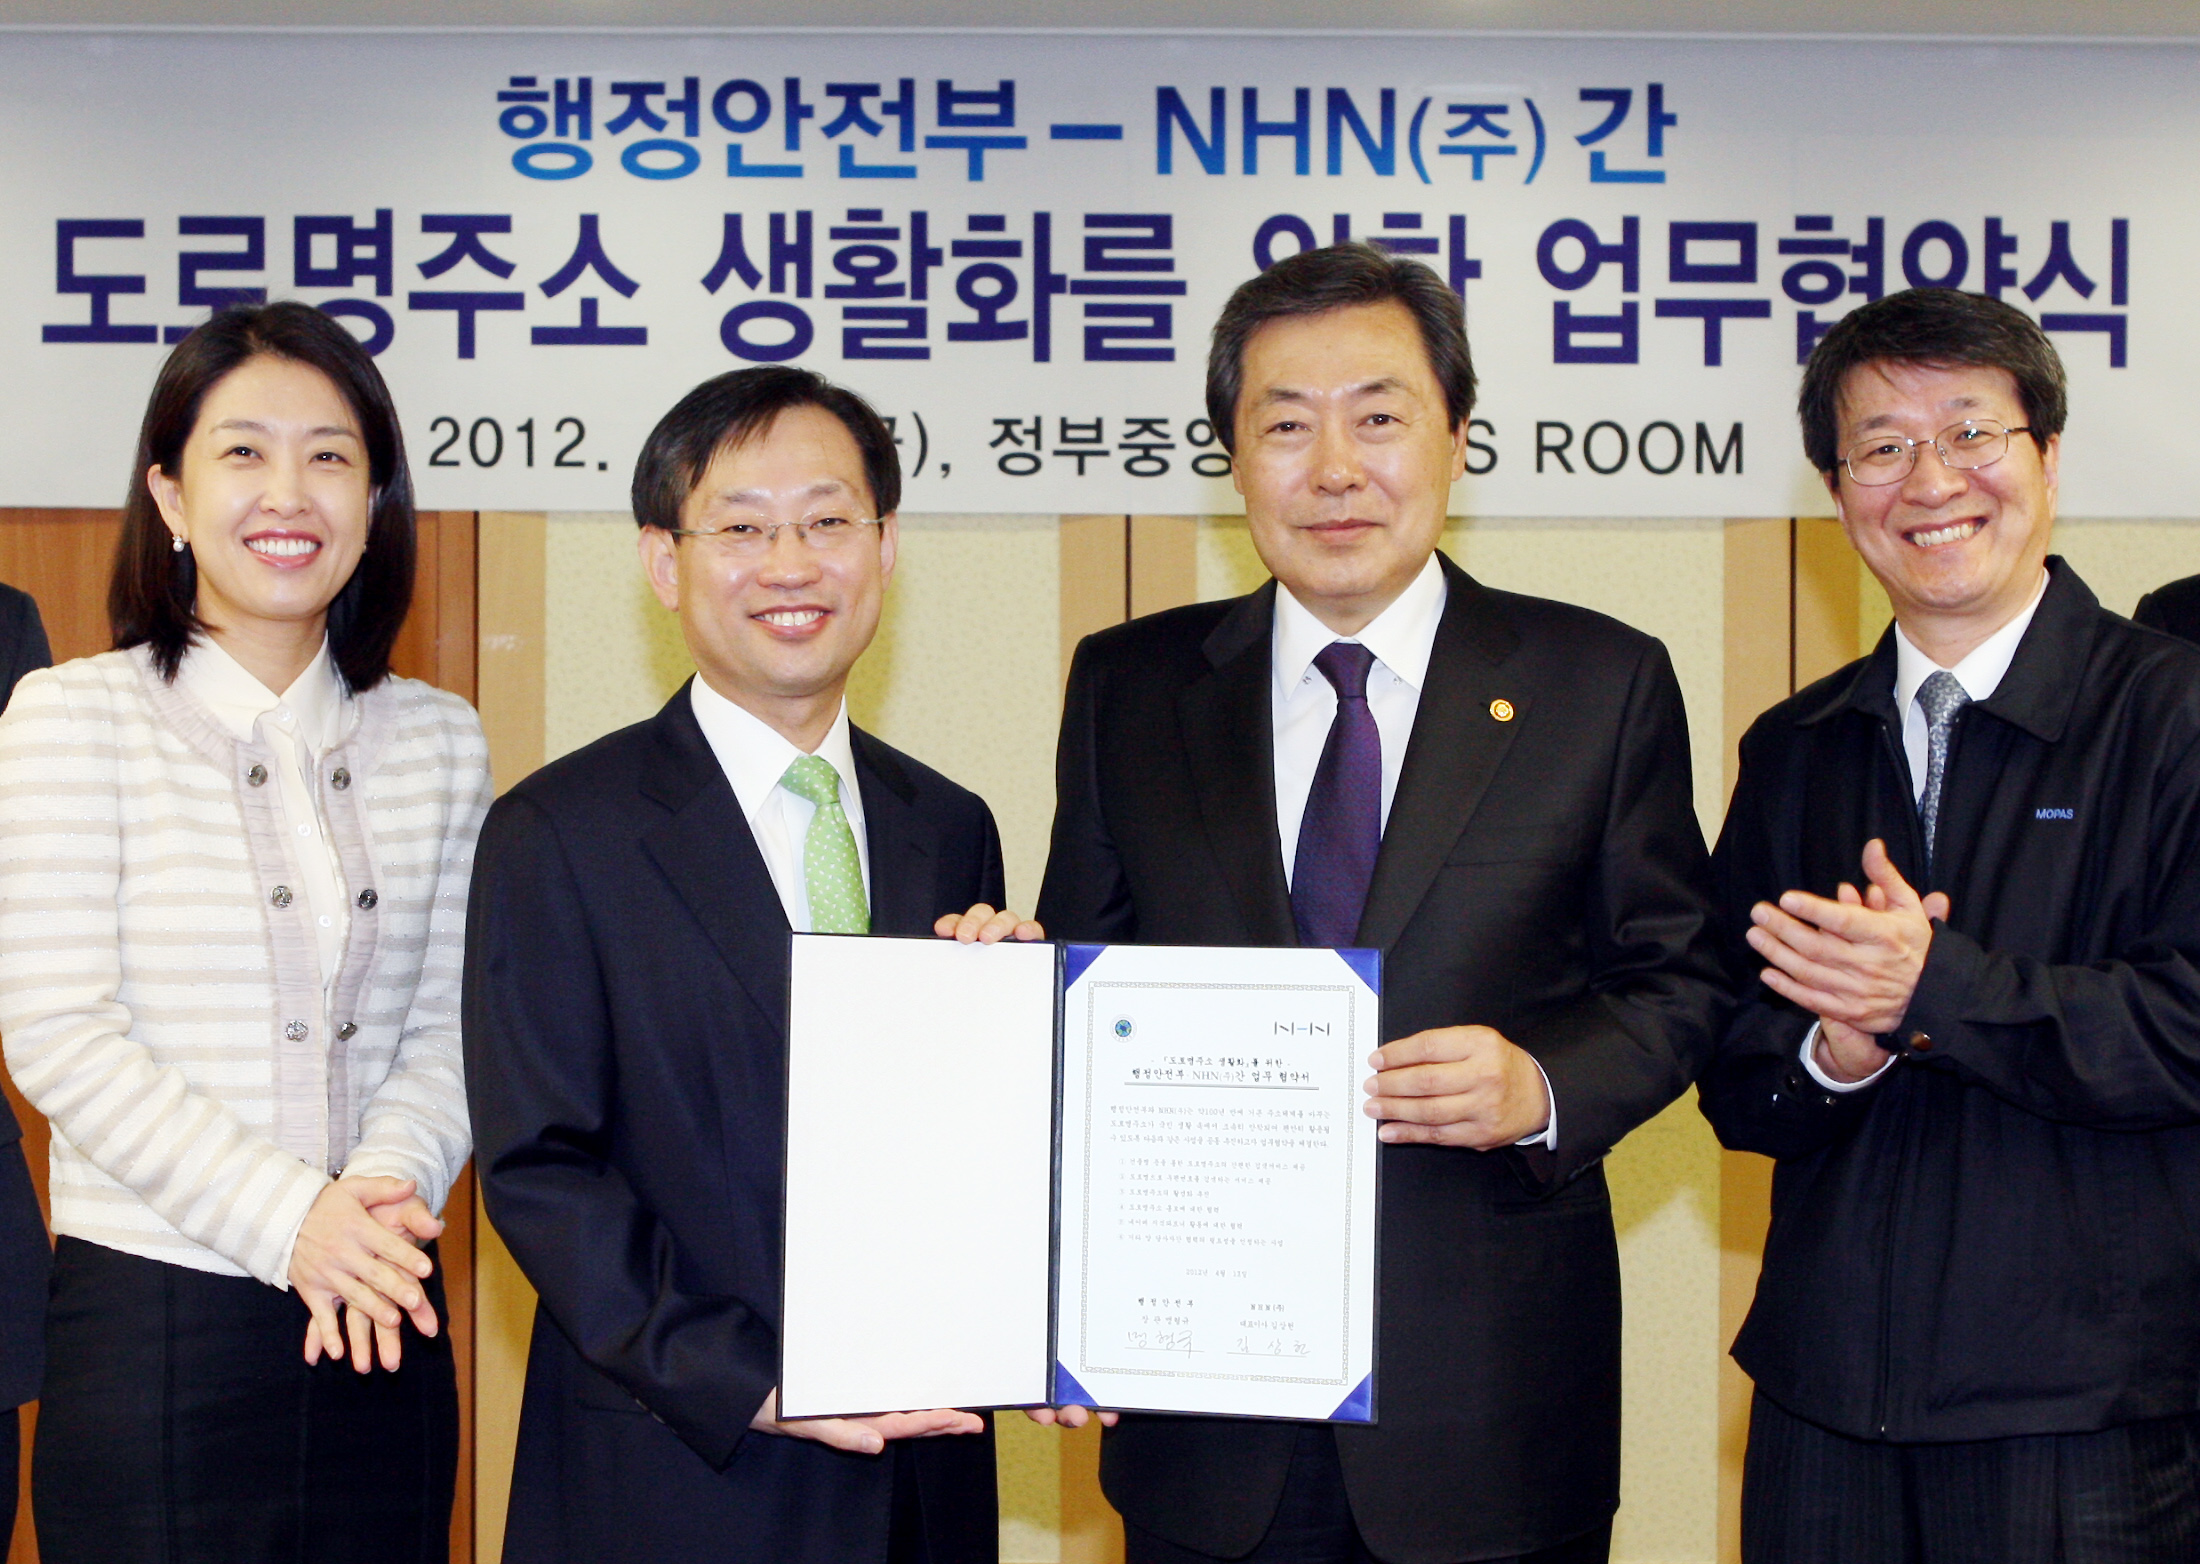 행정안전부-NHN(주), '도로명주소 생활화' 업무협약 체결